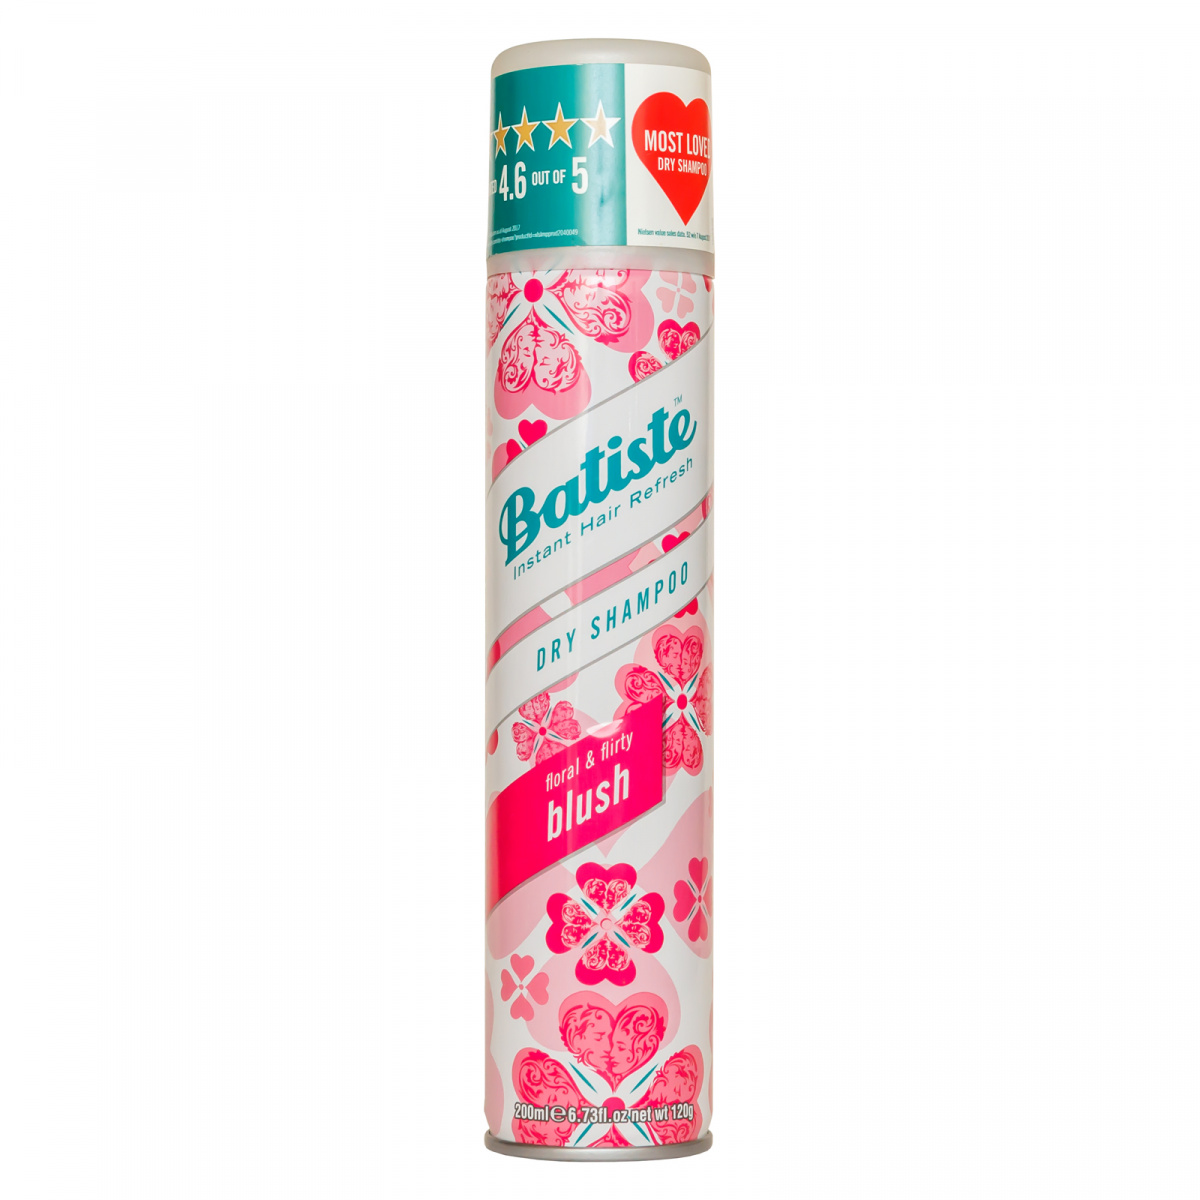 Batiste Dry Shampoo Blush - Сухой шампунь с цветочным ароматом 200 мл Batiste Dry Shampoo (Великобритания) купить по цене 551 руб.